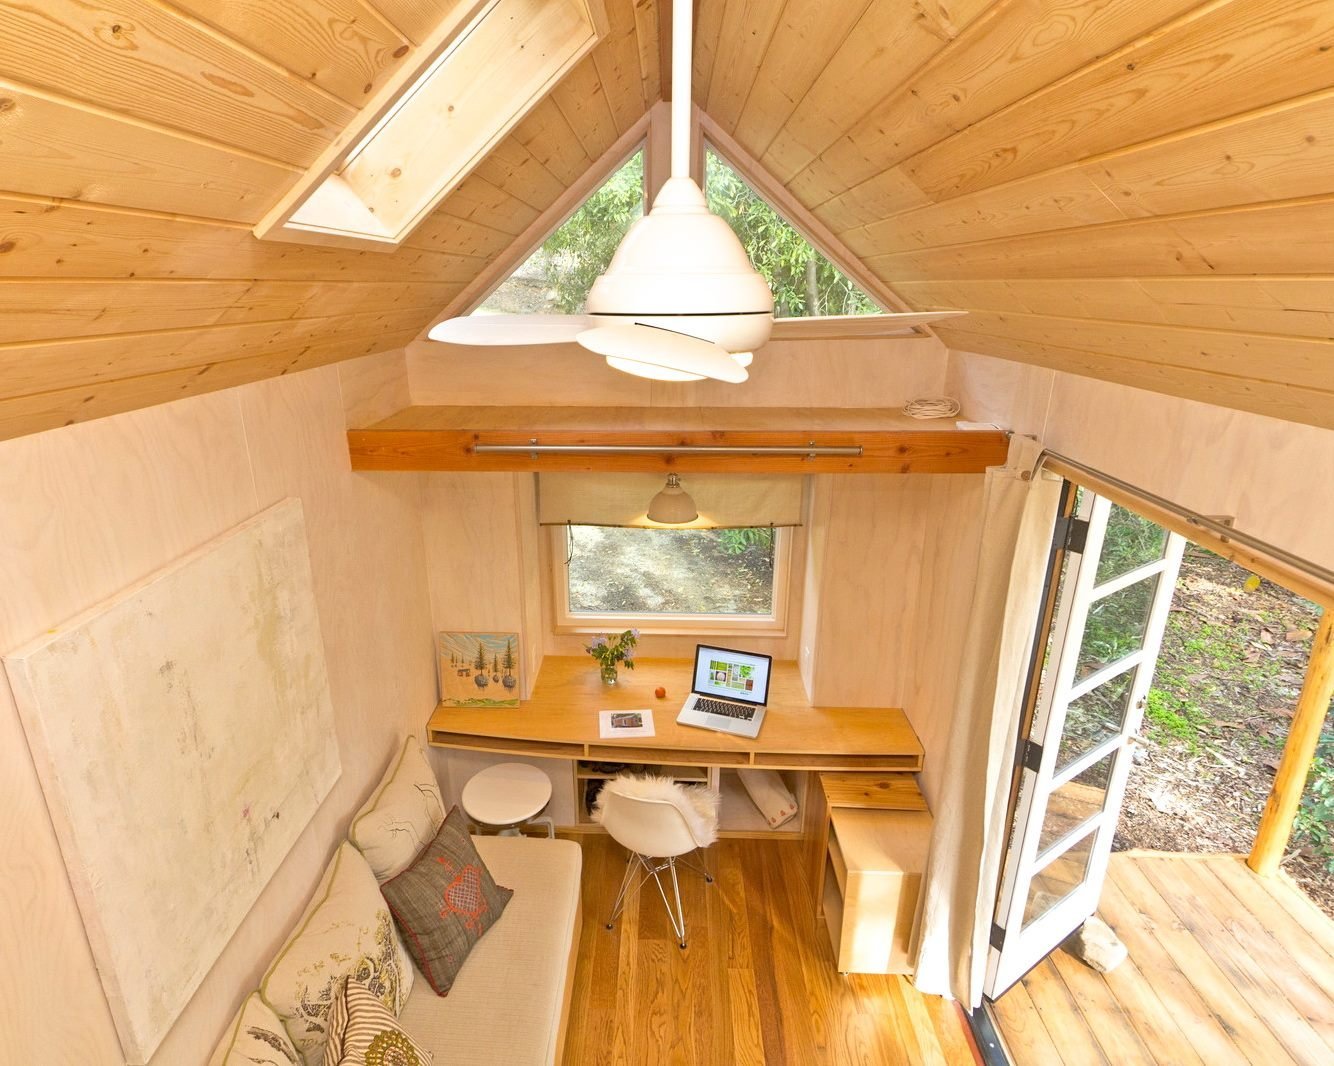 Маленький дачный домик с террасой под крышей фото интерьер